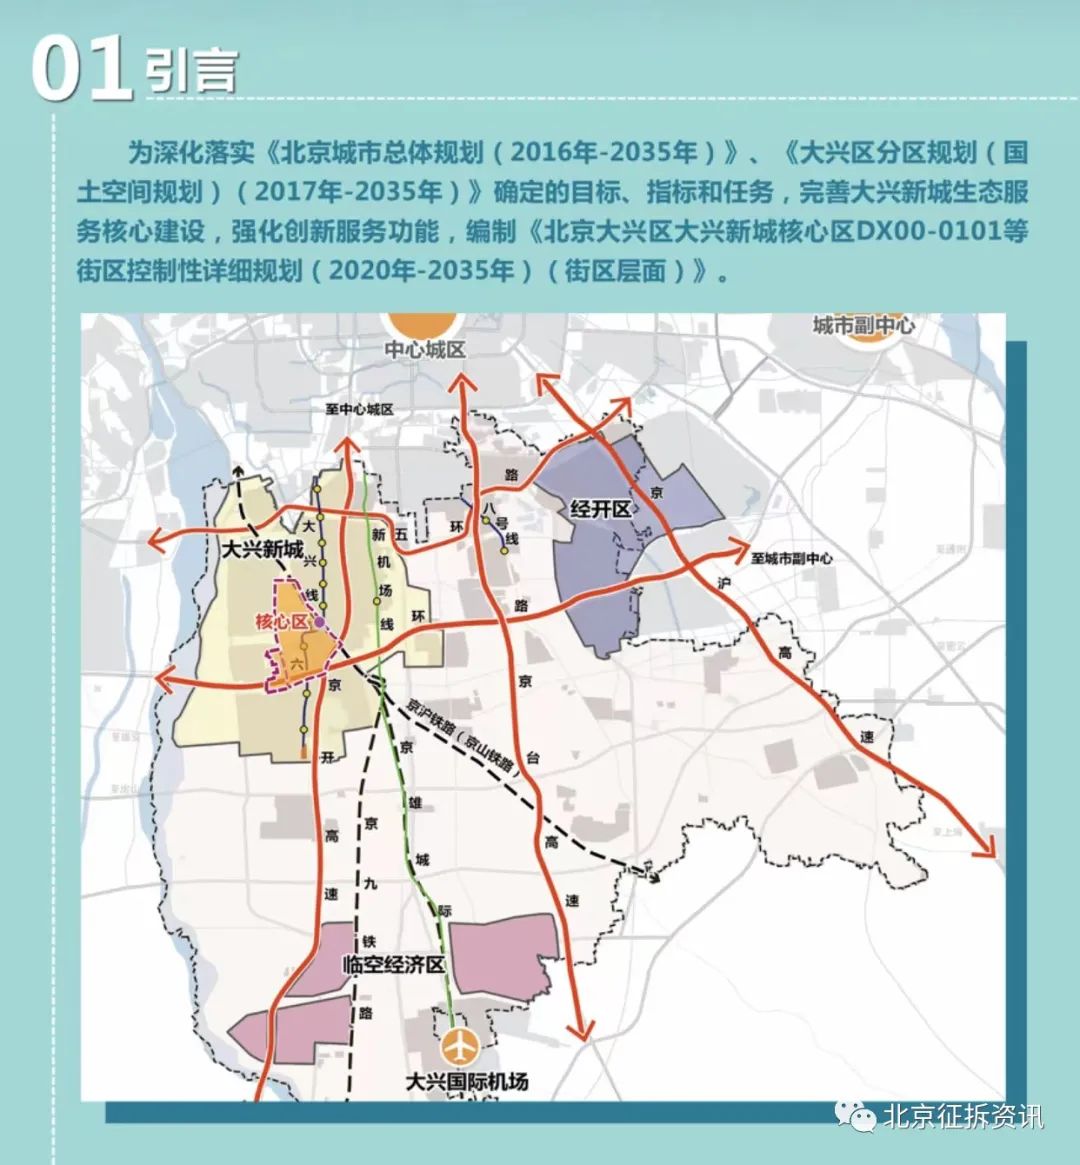 《大兴区大兴新城核心区控制性详细规划(街区层面)(2020年